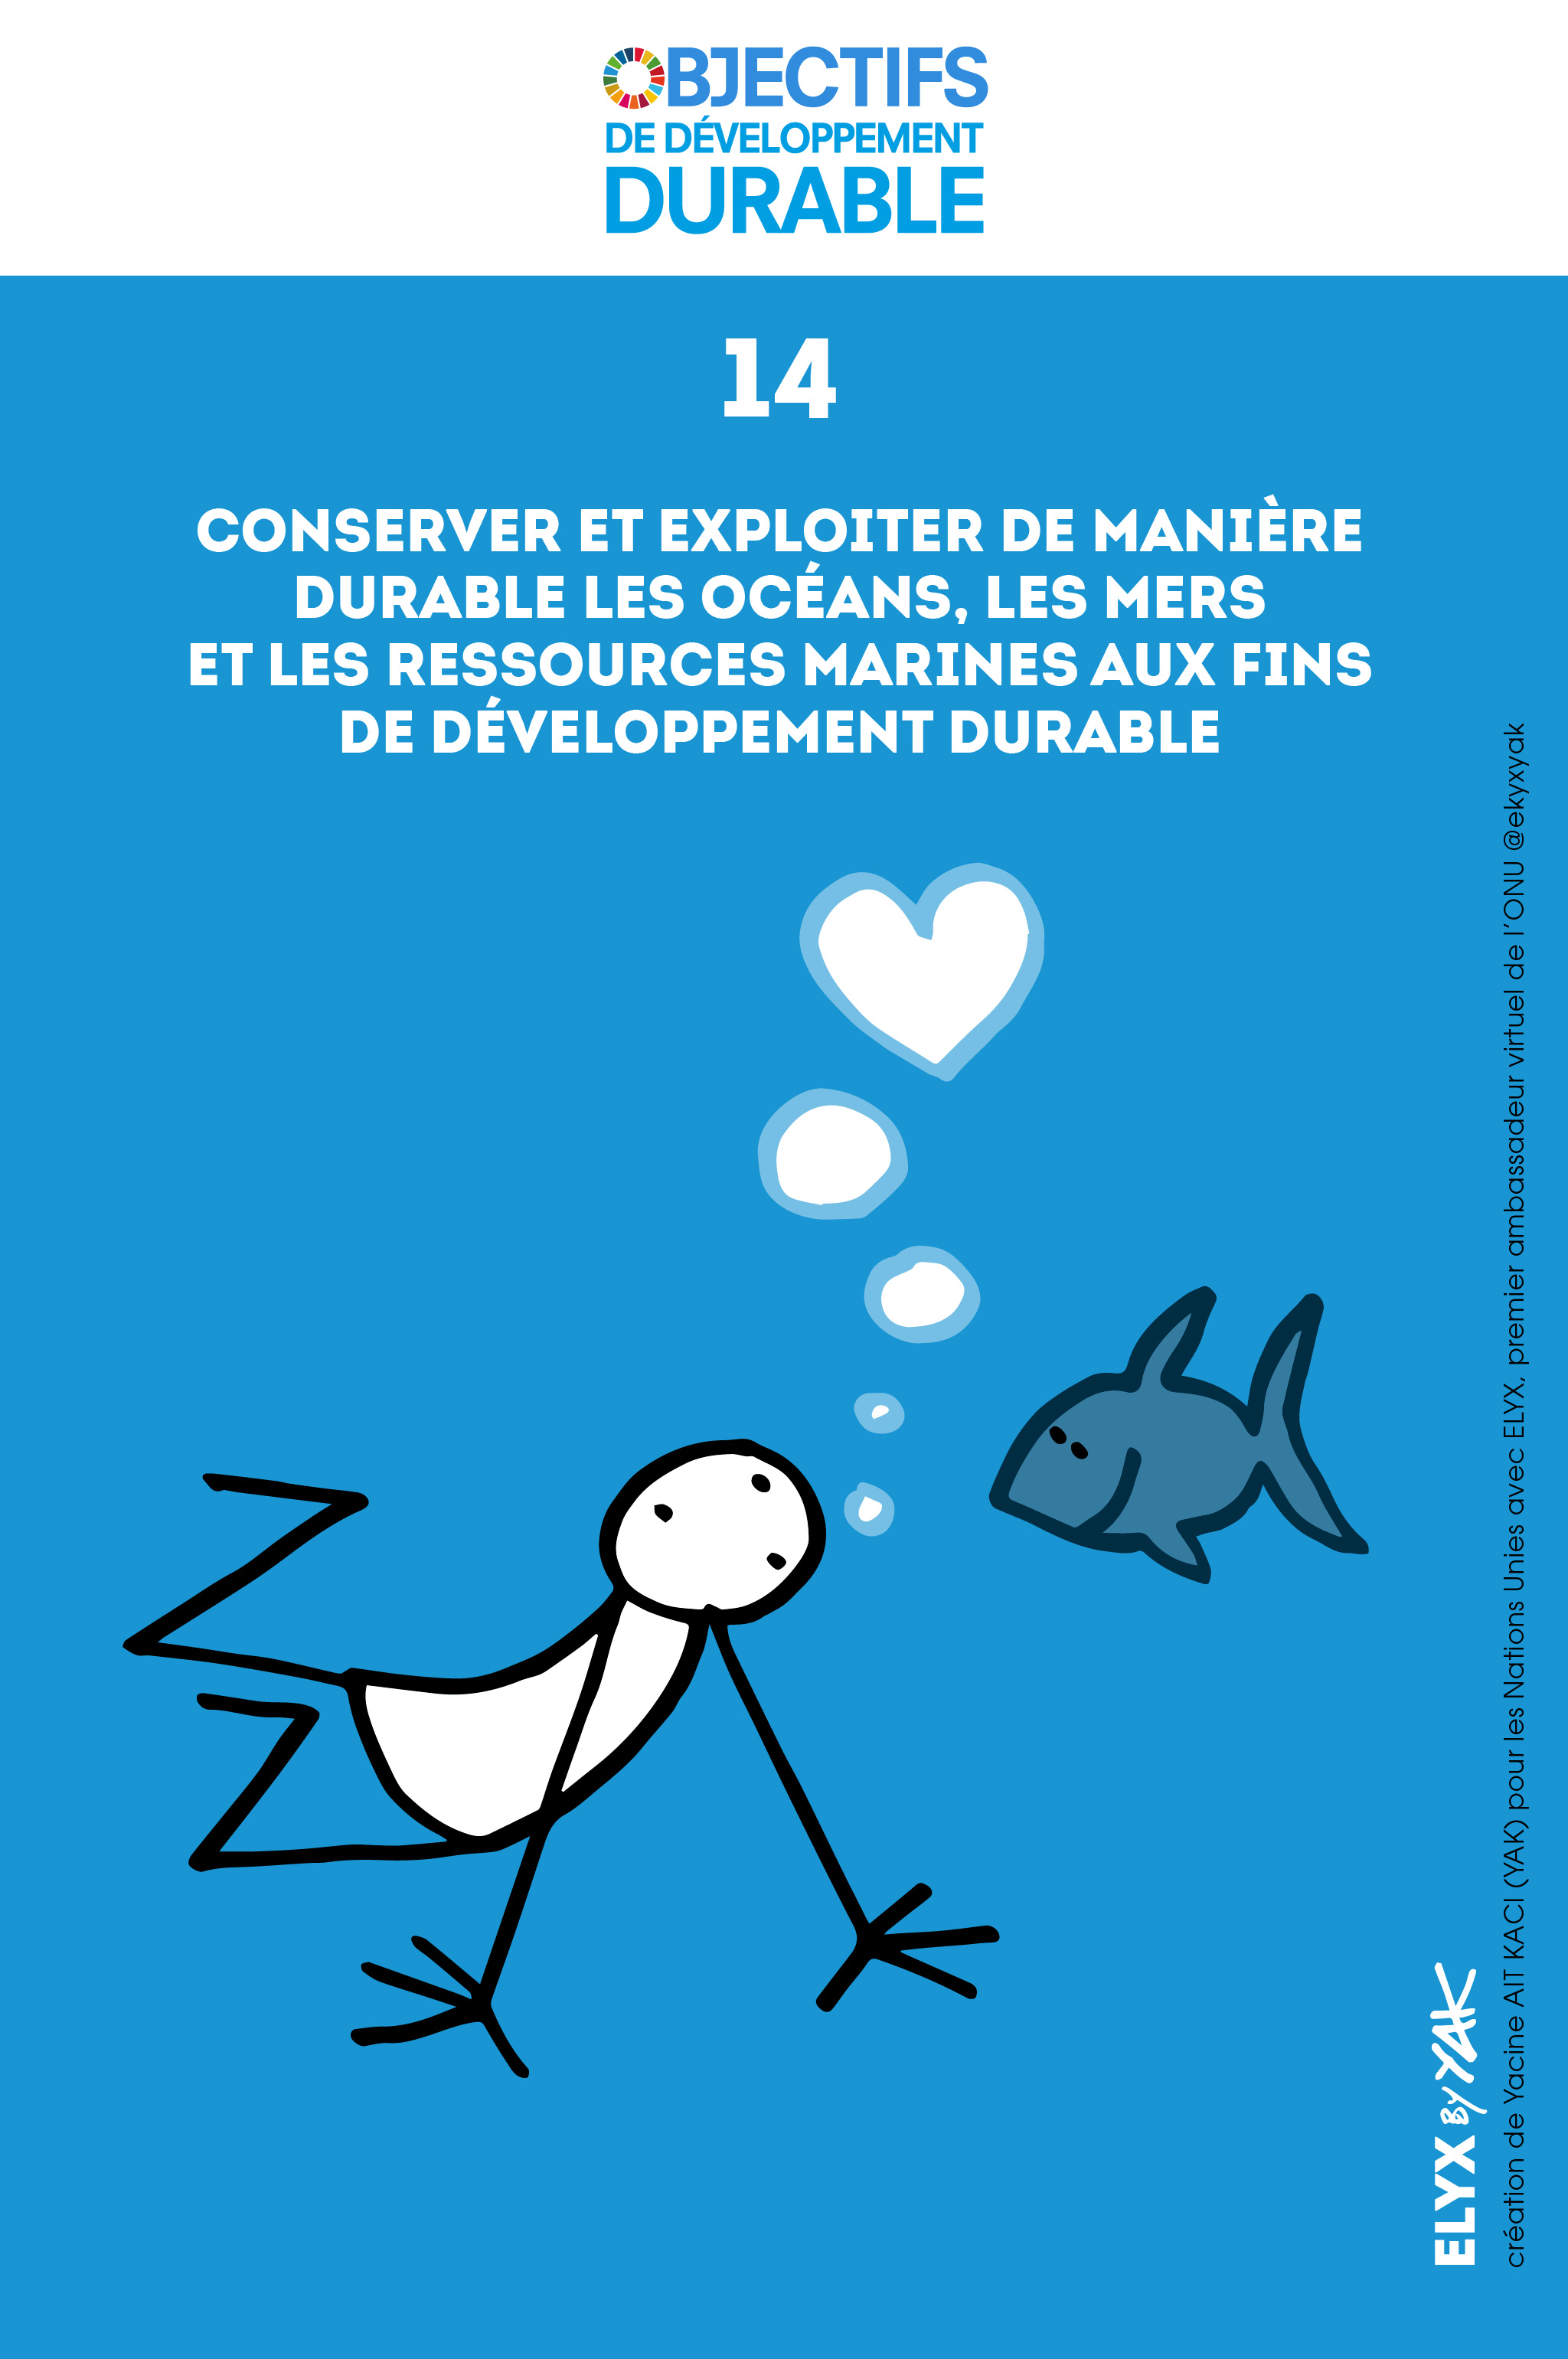 Pêche à l'aimant - Des règles à respecter - Loisirs en milieux aquatiques -  Eau et milieux aquatiques - Environnement et développement durable -  Actions de l'État - Les services de l'État en Morbihan